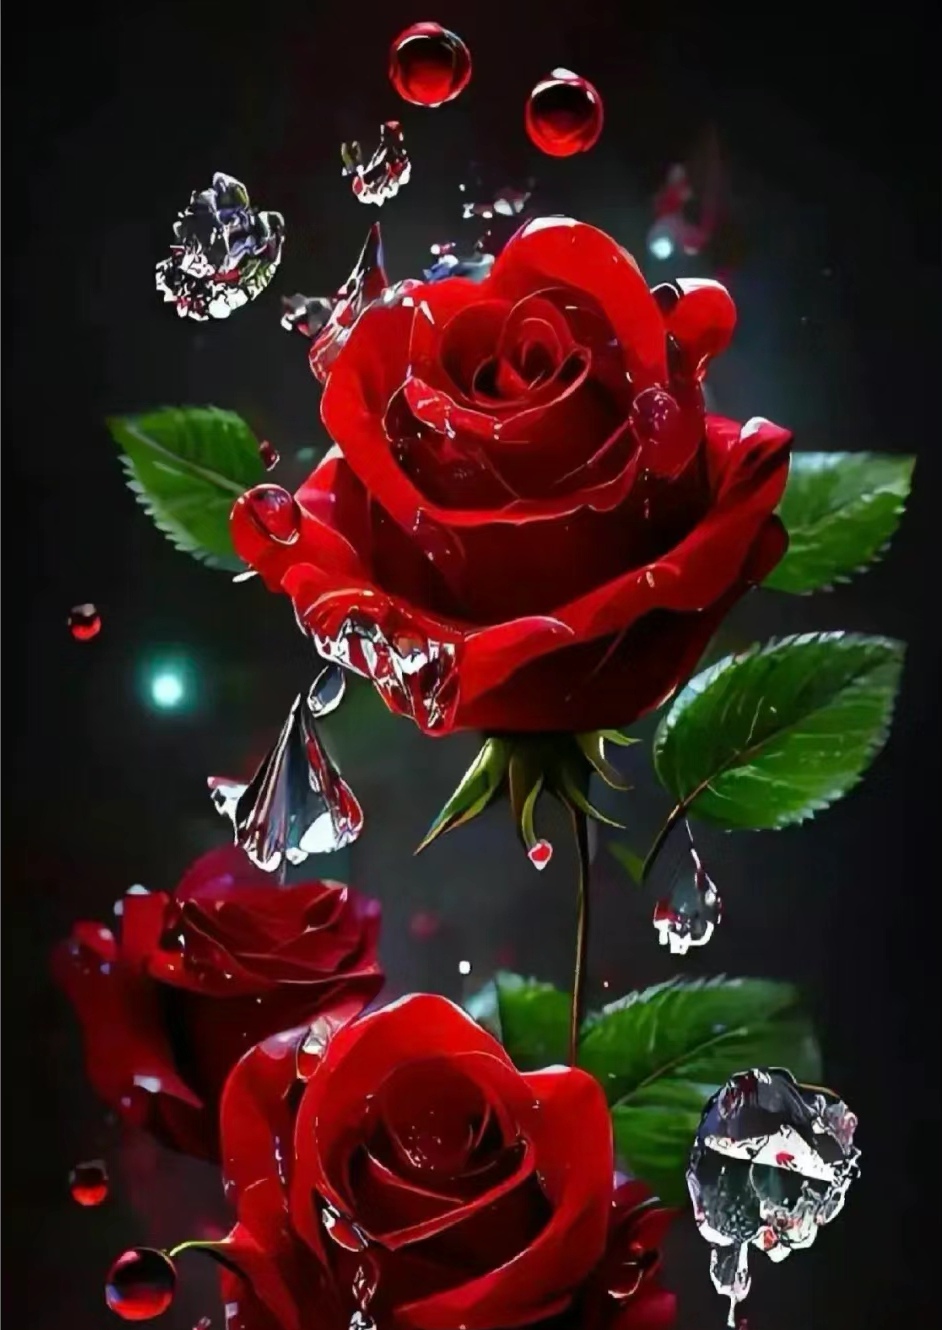 那一抹惊艳的红色,是玫瑰花在静谧中的绽放